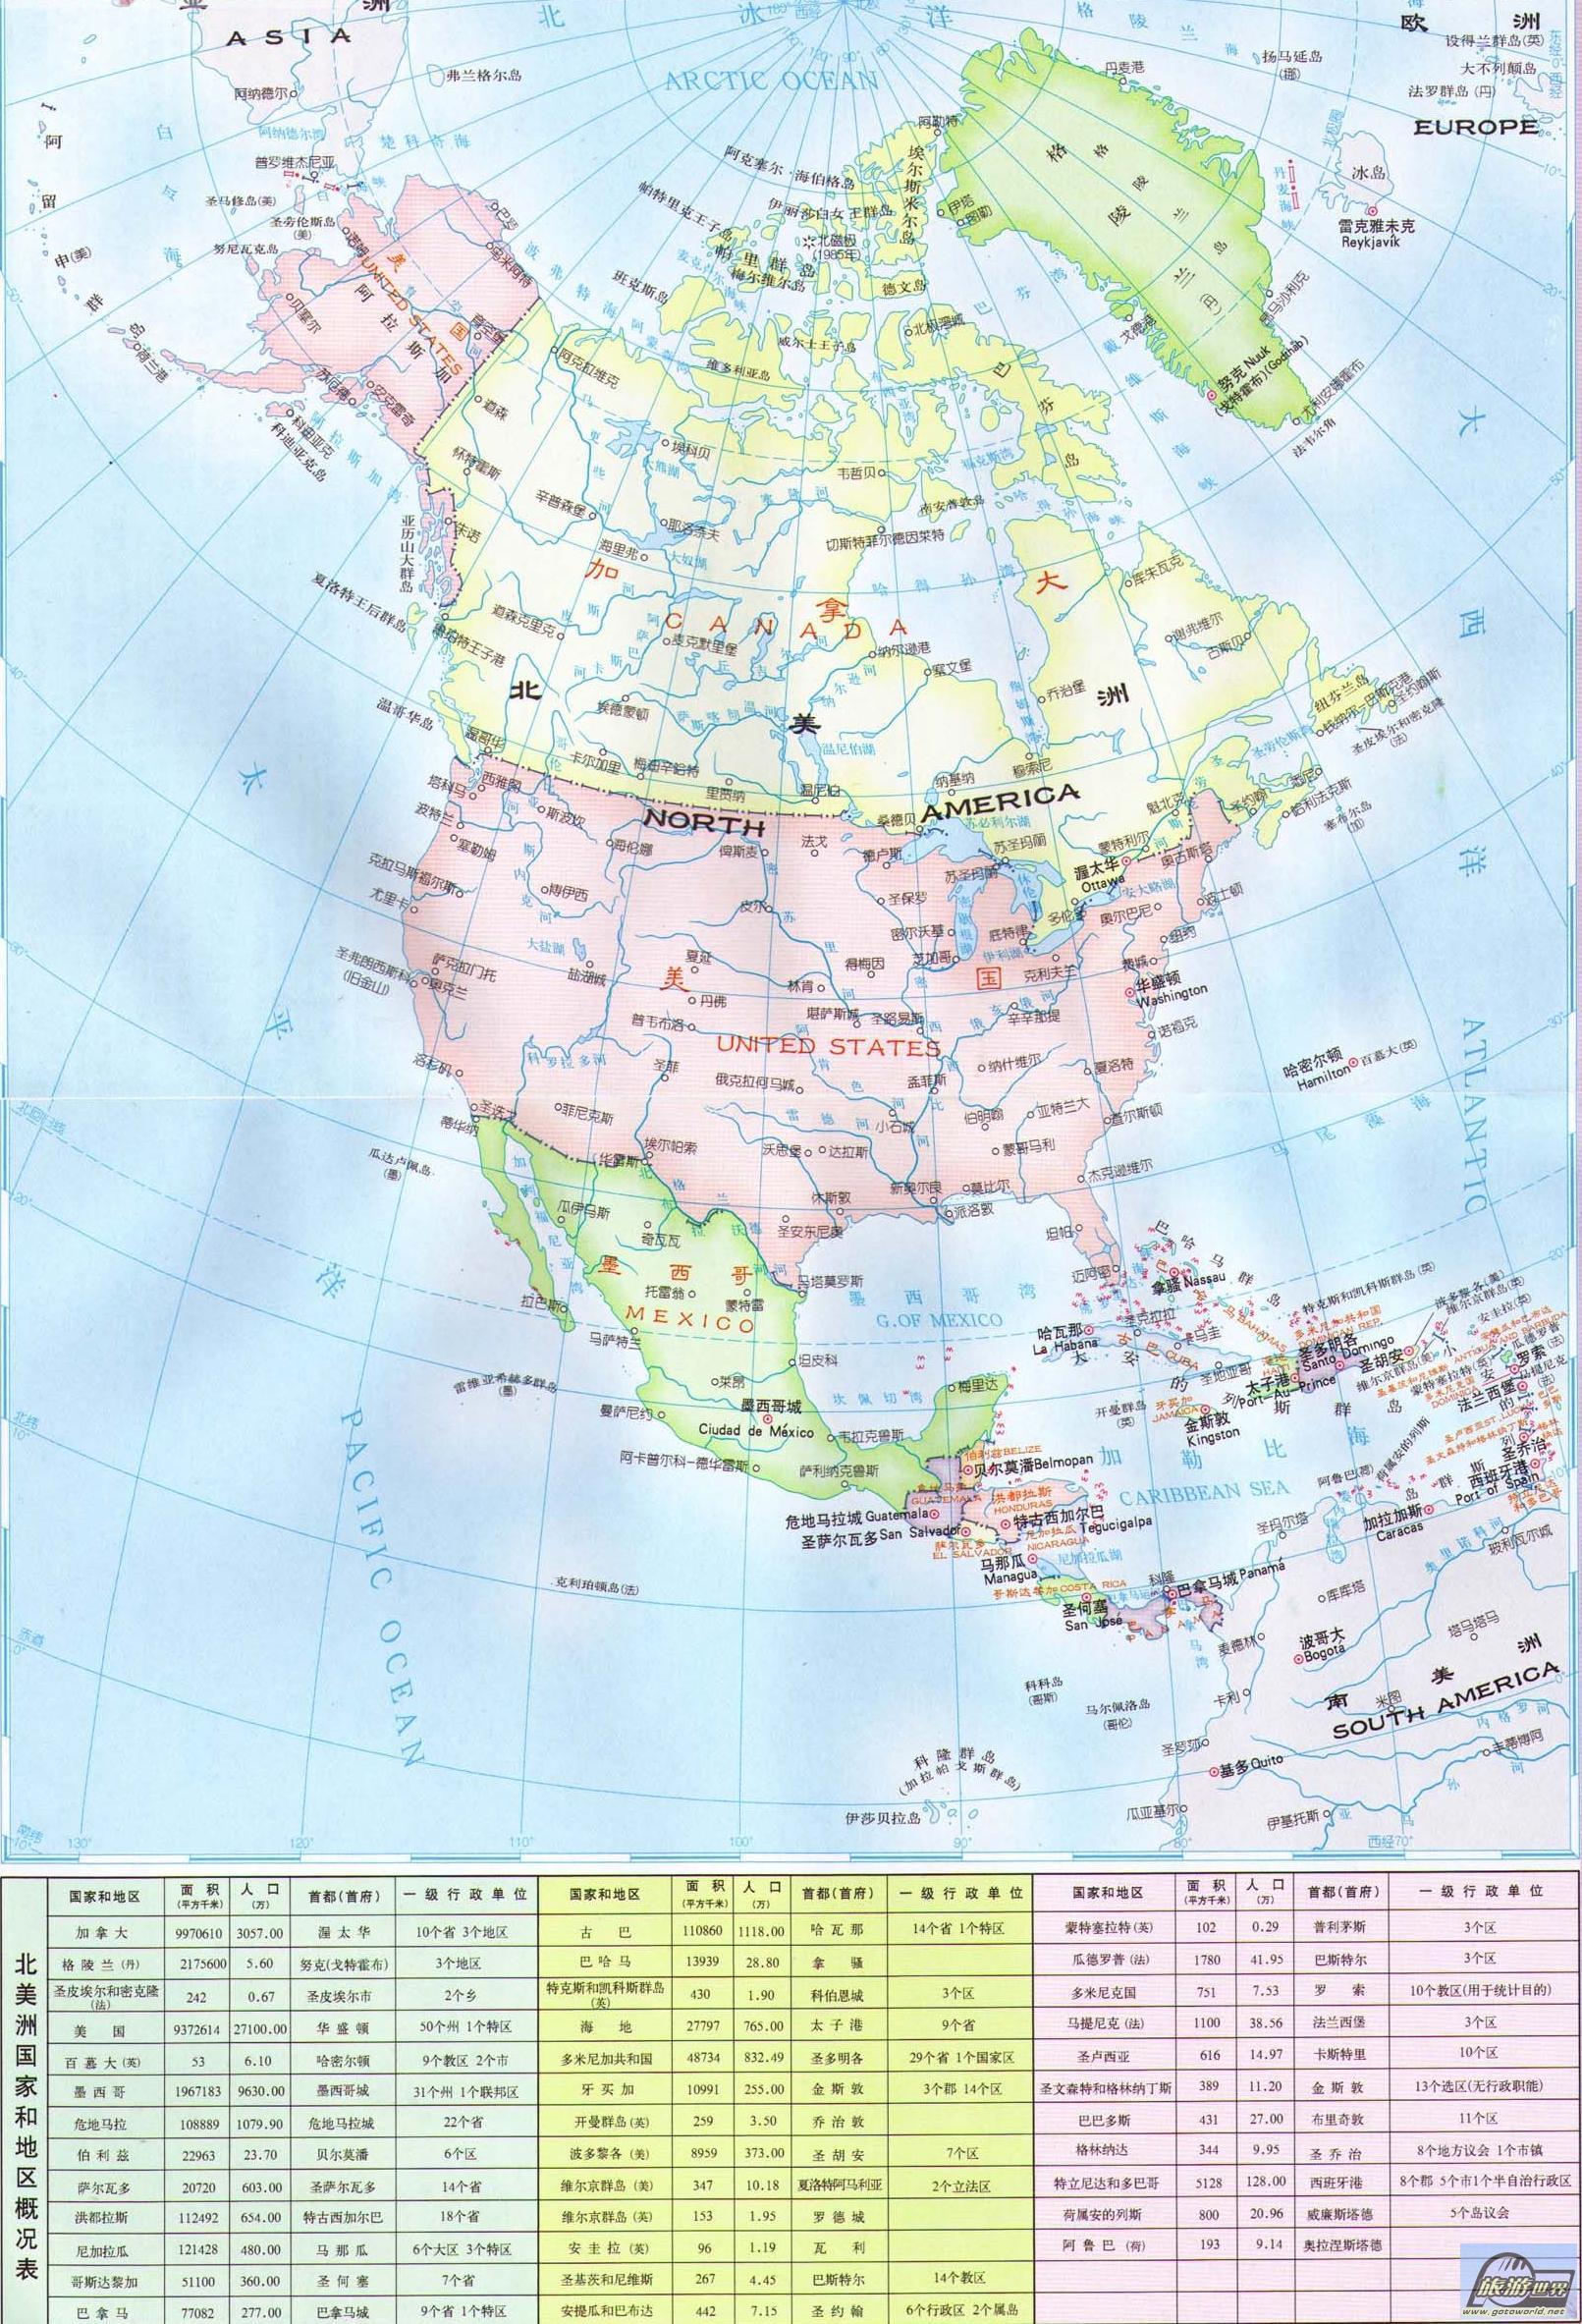 图文解读北美洲,高清地图可收藏